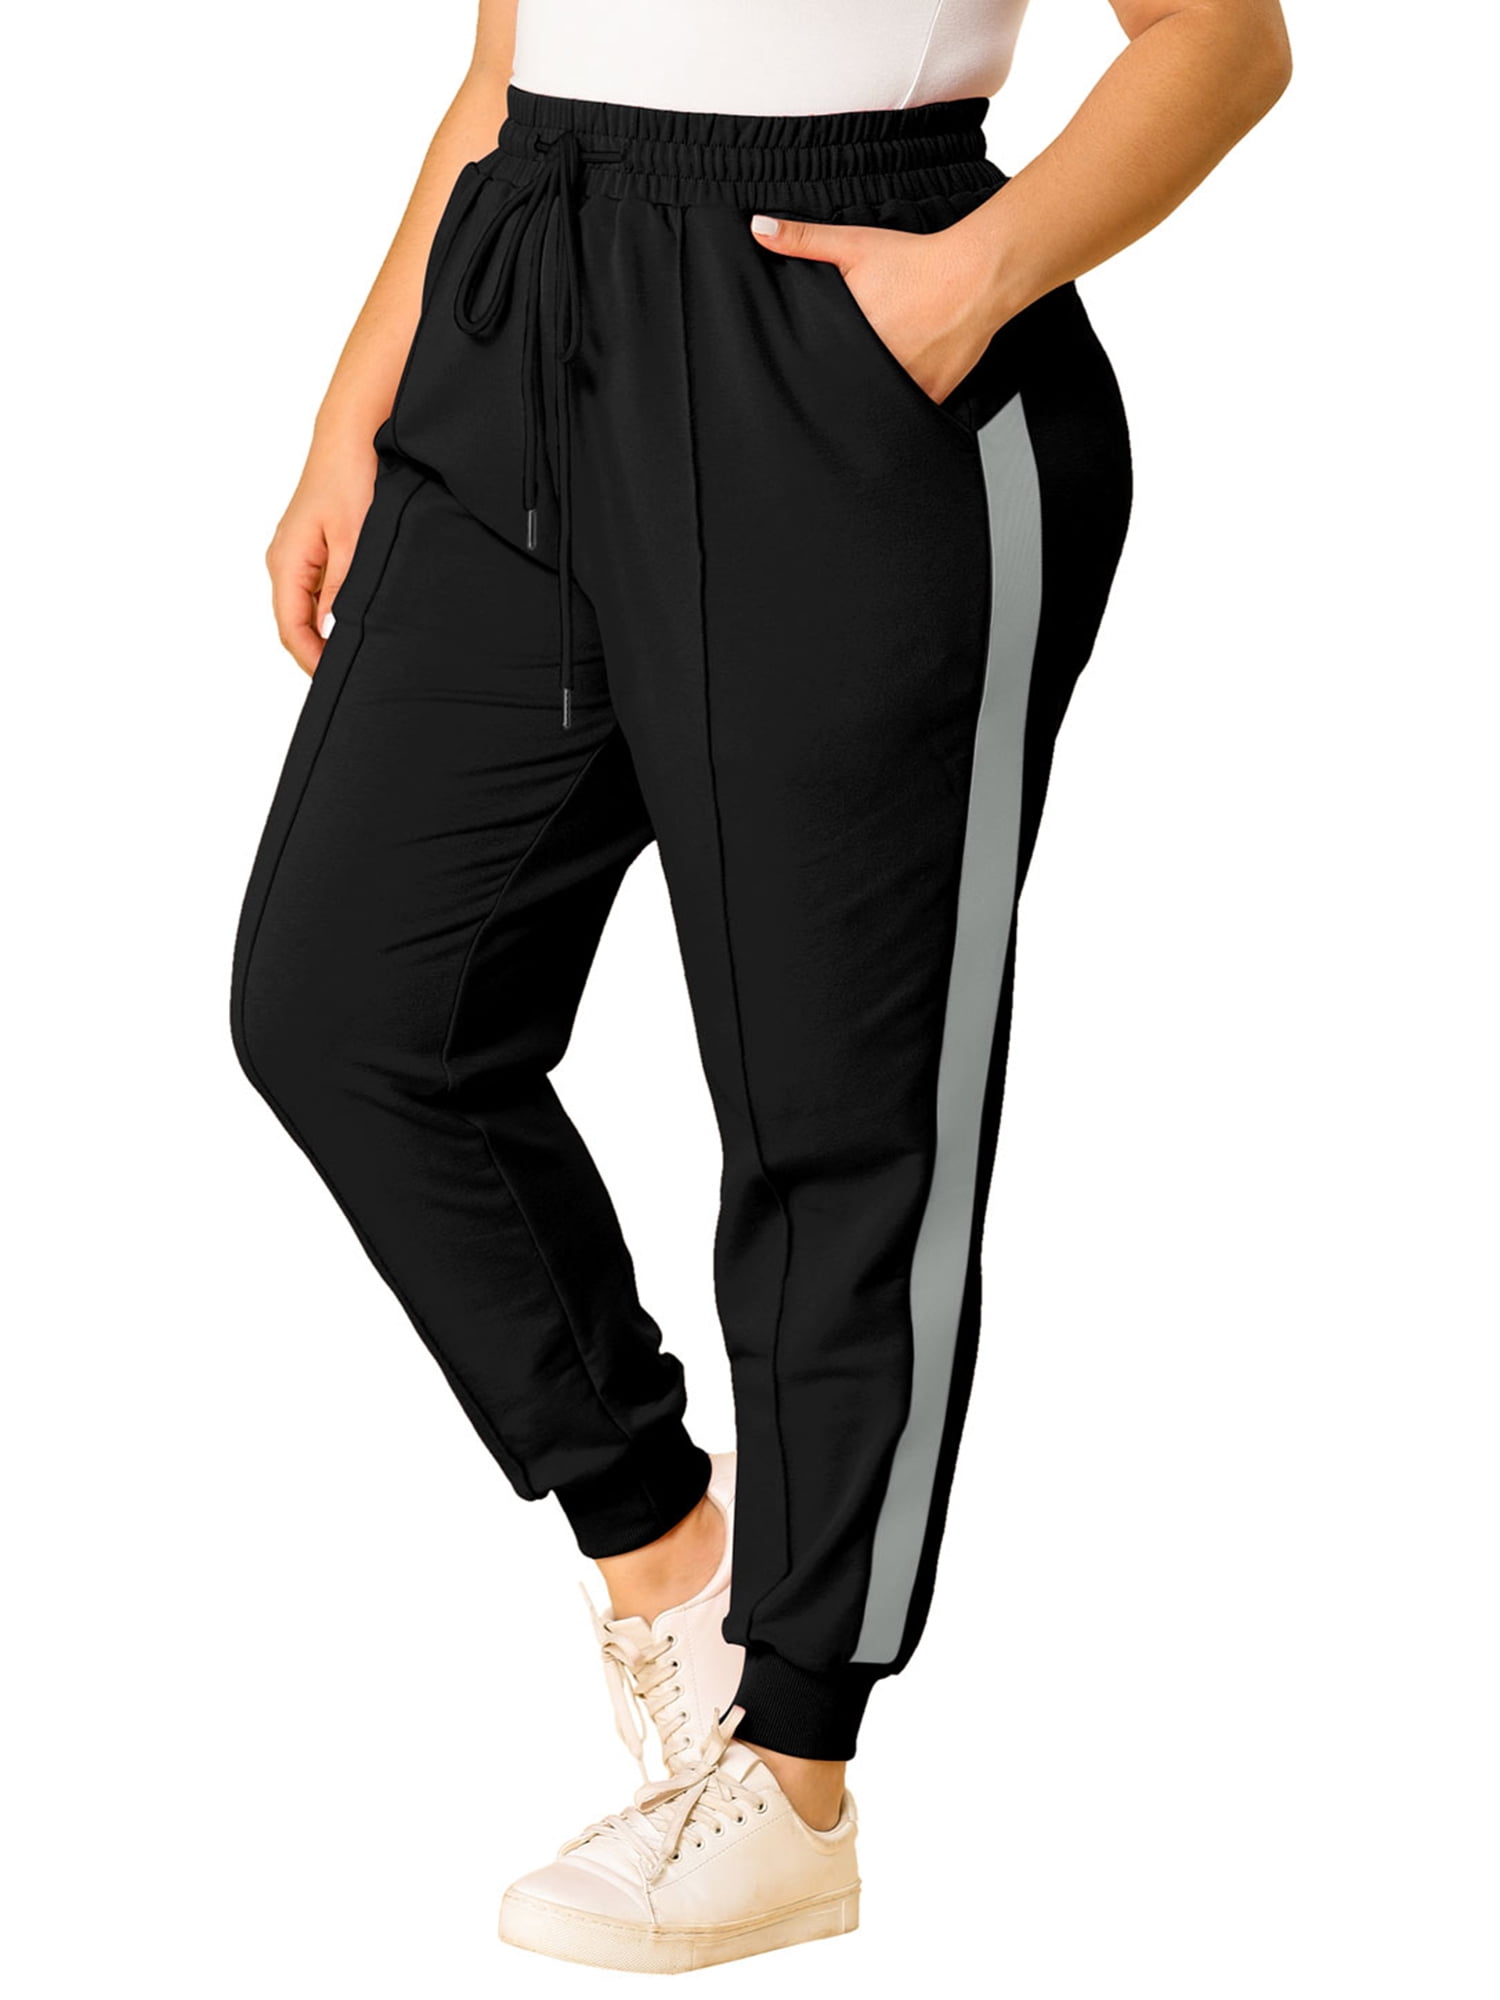 Unique Bargains Women's Plus Size Sweatpants Elastic Waist Joggers Pants 